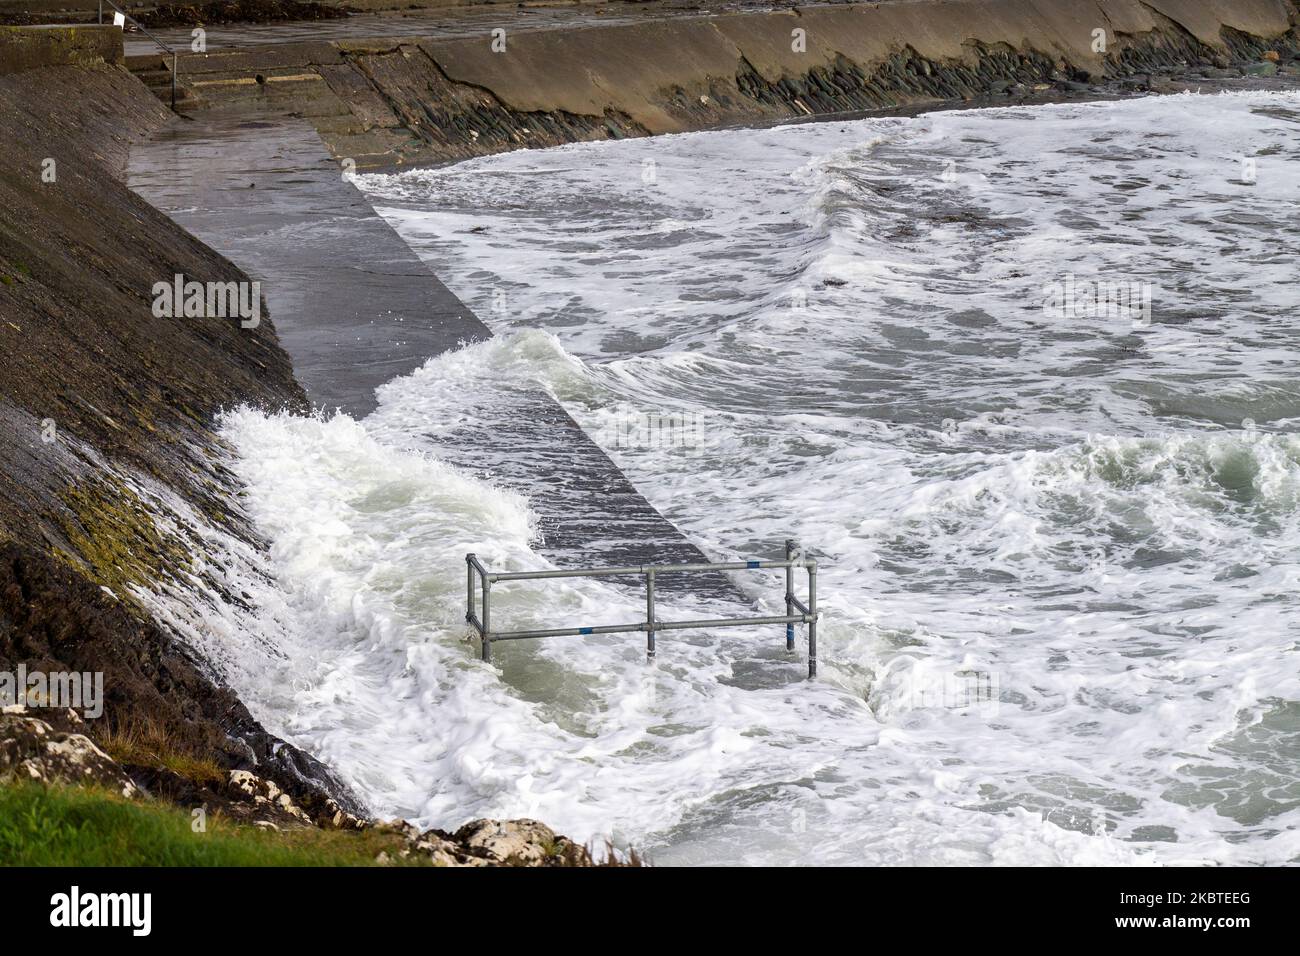 Ondes de tempête se brisant au-dessus des défenses de la mer. Tragumna, West Cork, Irlande Banque D'Images